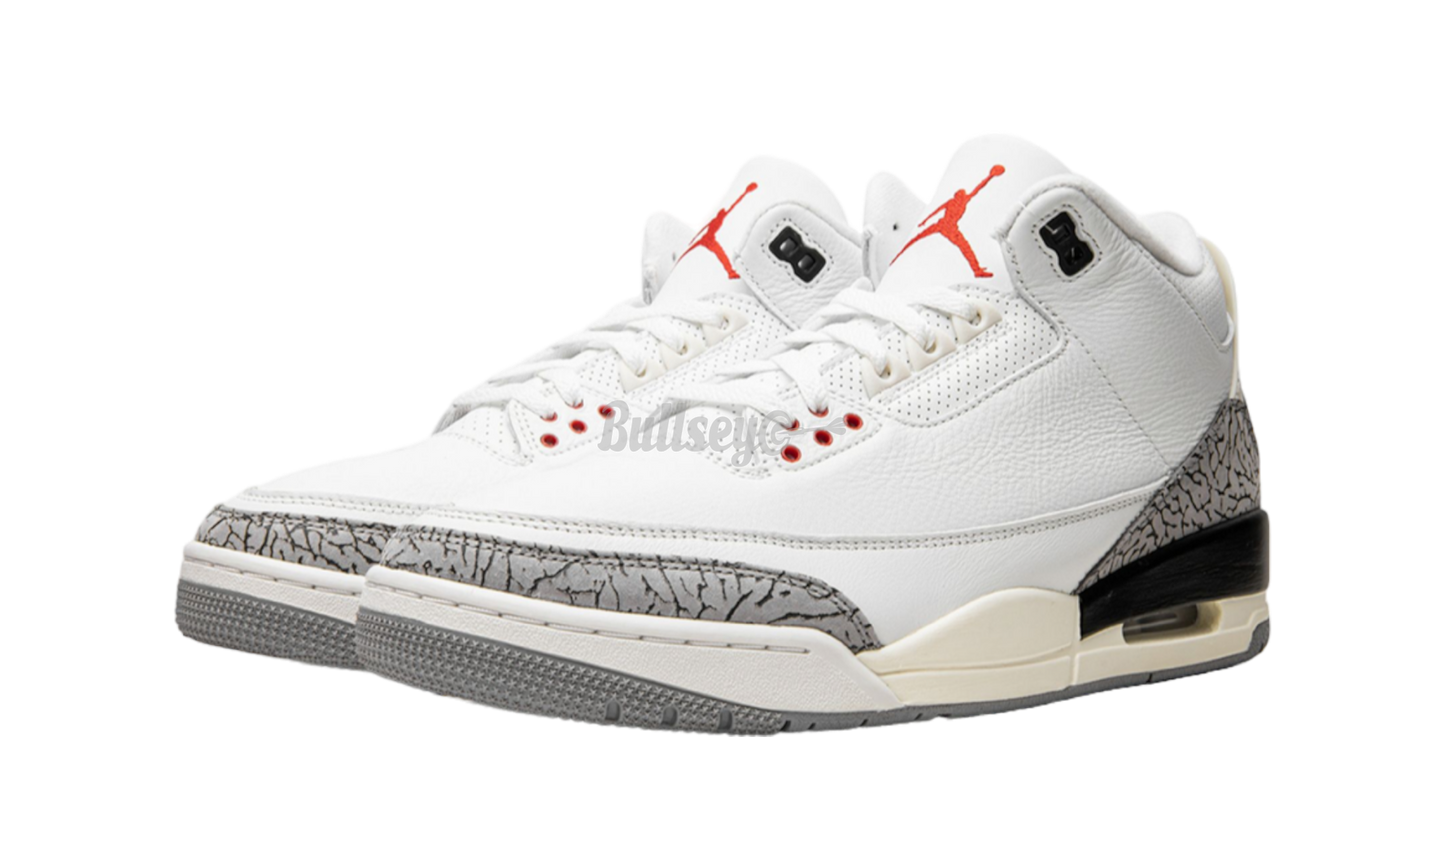 Air Jordan 3 Retro "White Cement Reimagined"